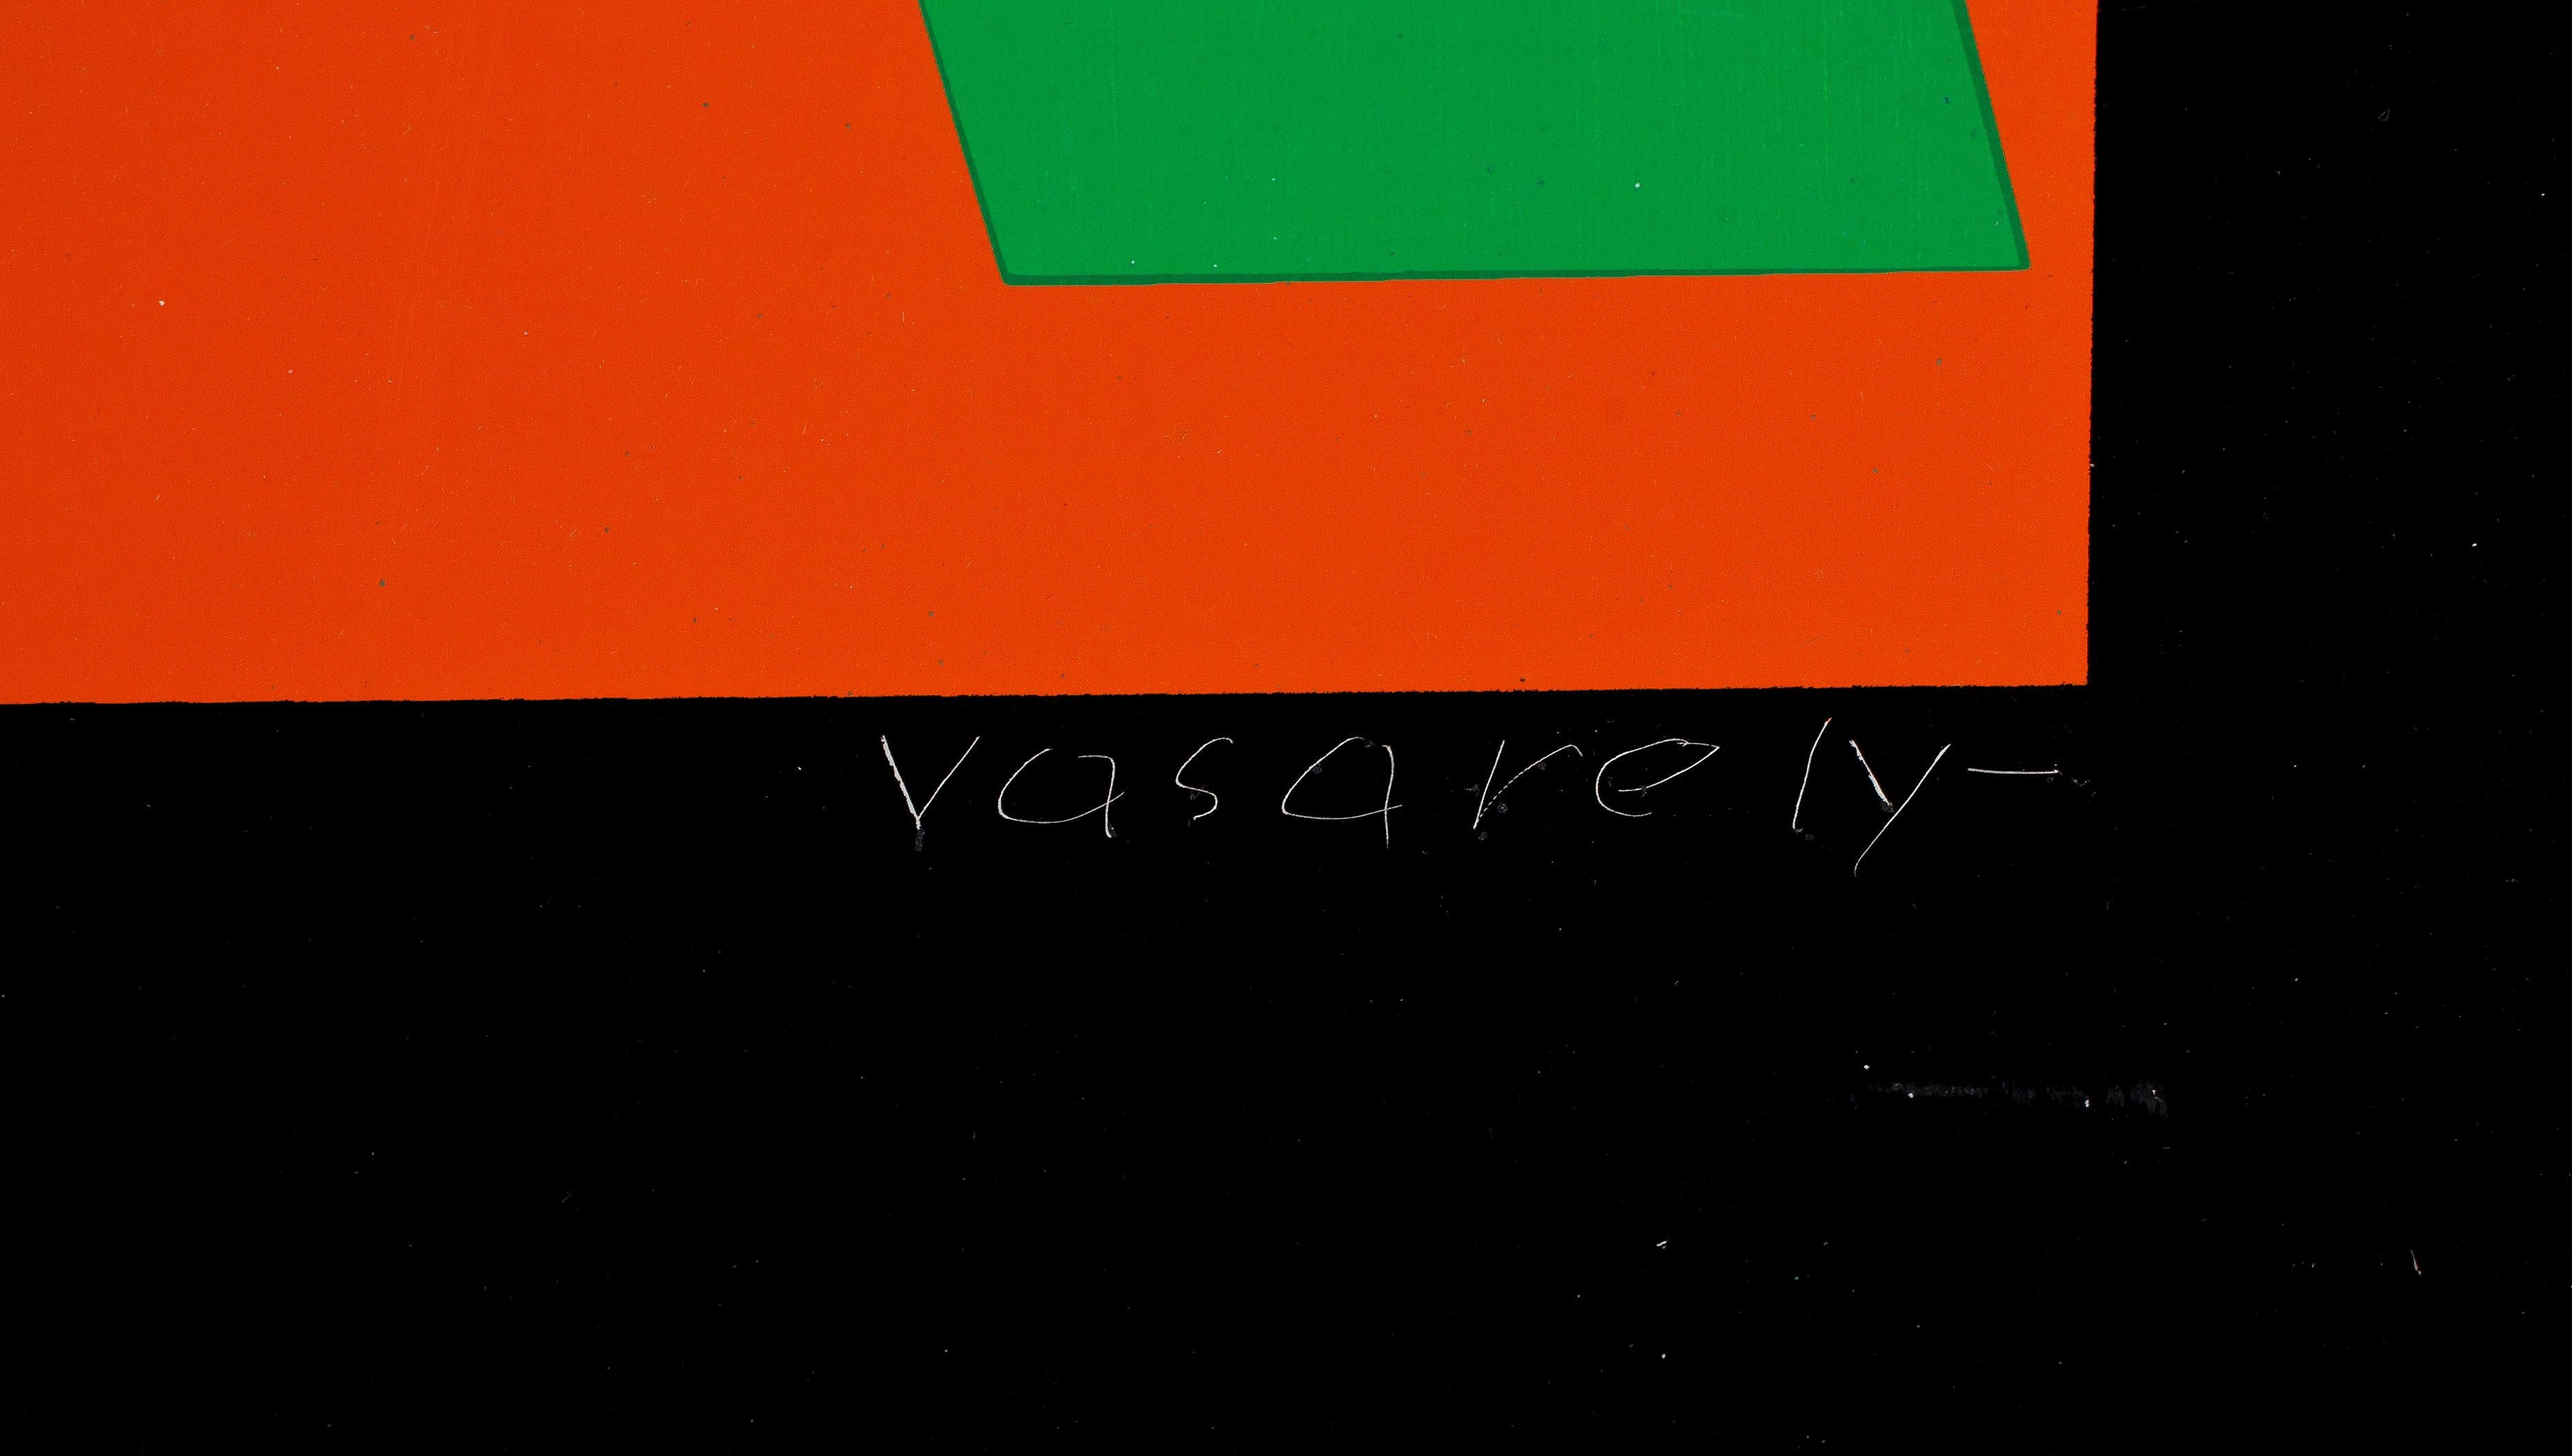 multiple sur métal de la composition géométrique de Victor Vasarely signée France 1970
Composition géométrique sur métal signature gravée et numérotée 45/160
Bon état, quelques légères rayures
Victor Vasarely, la stratégie du multiple